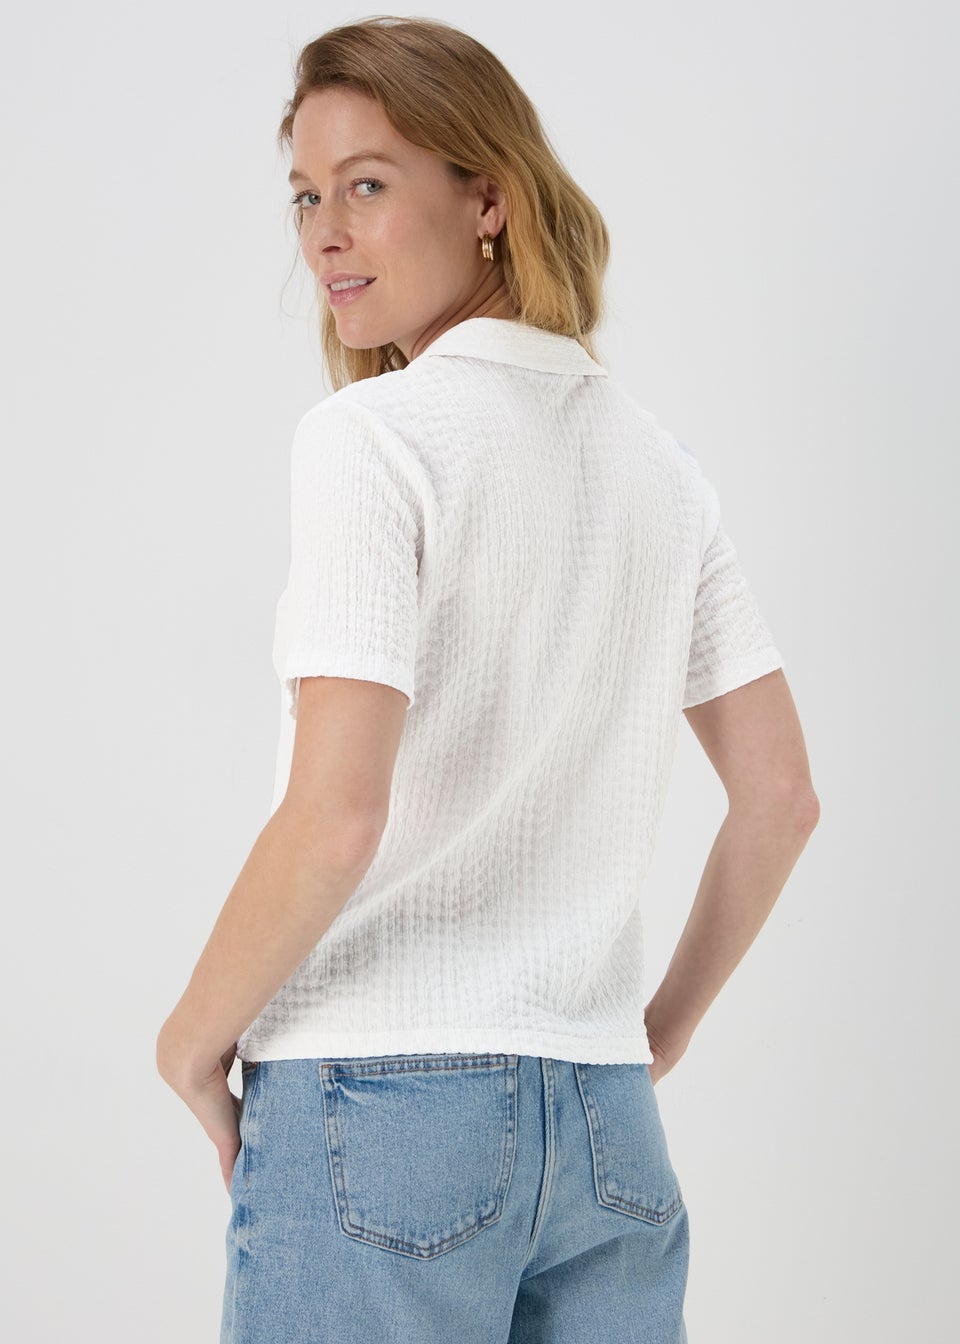 WhiteTextured Short Sleeve Jersey Shirt